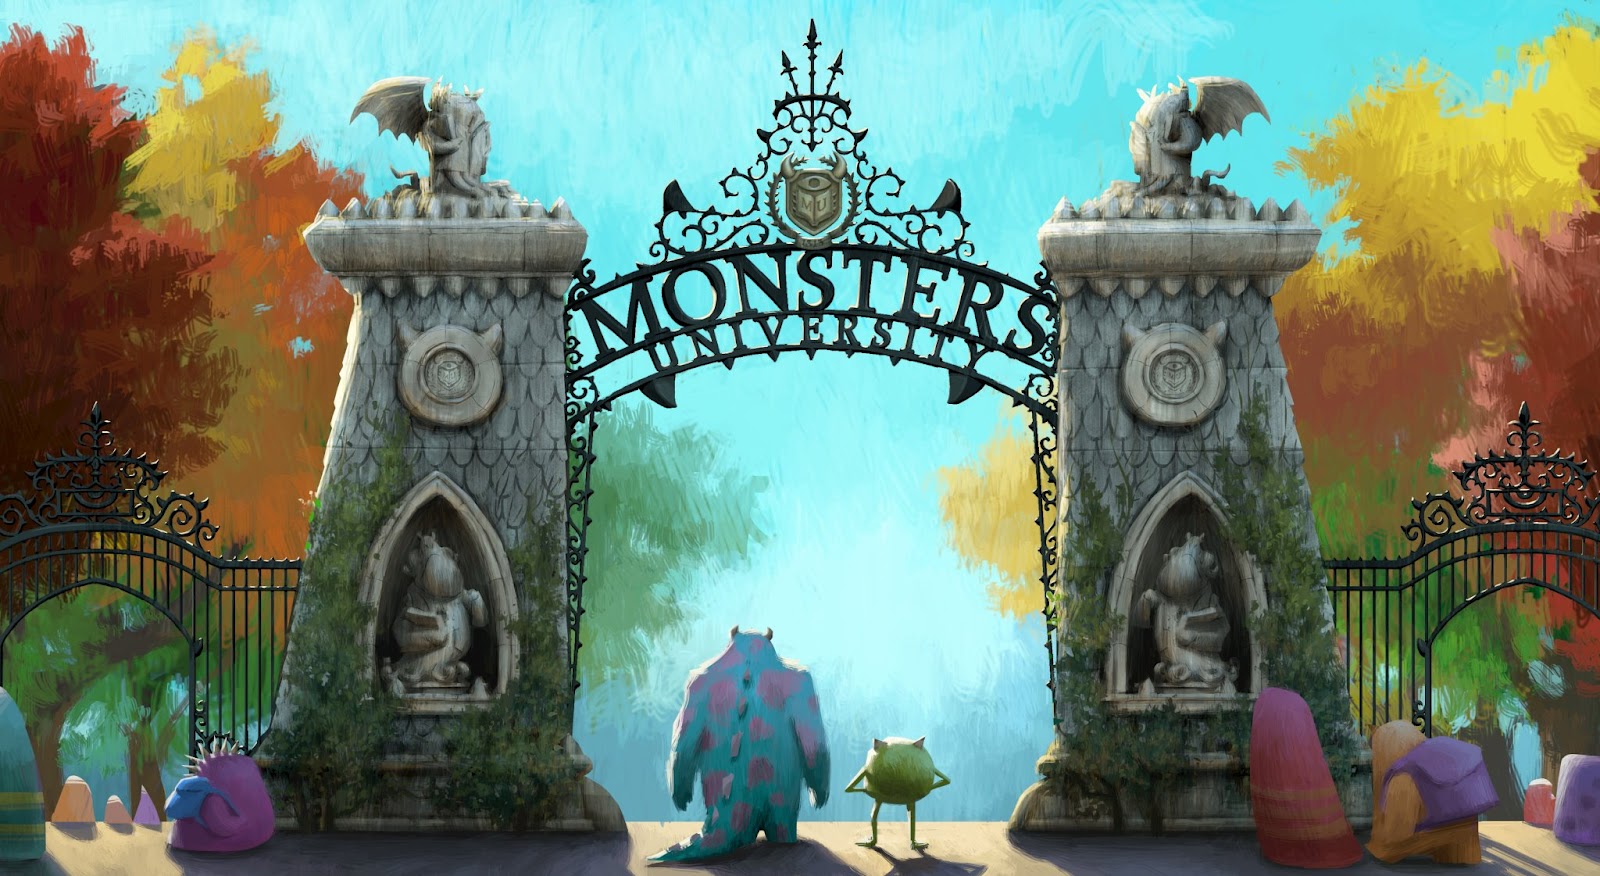 تحميل الفيلم الانمي monsters nuiversity ( مدرسه المرعبين ) بمساحه 342 MB Monsters+University+Concept+Art